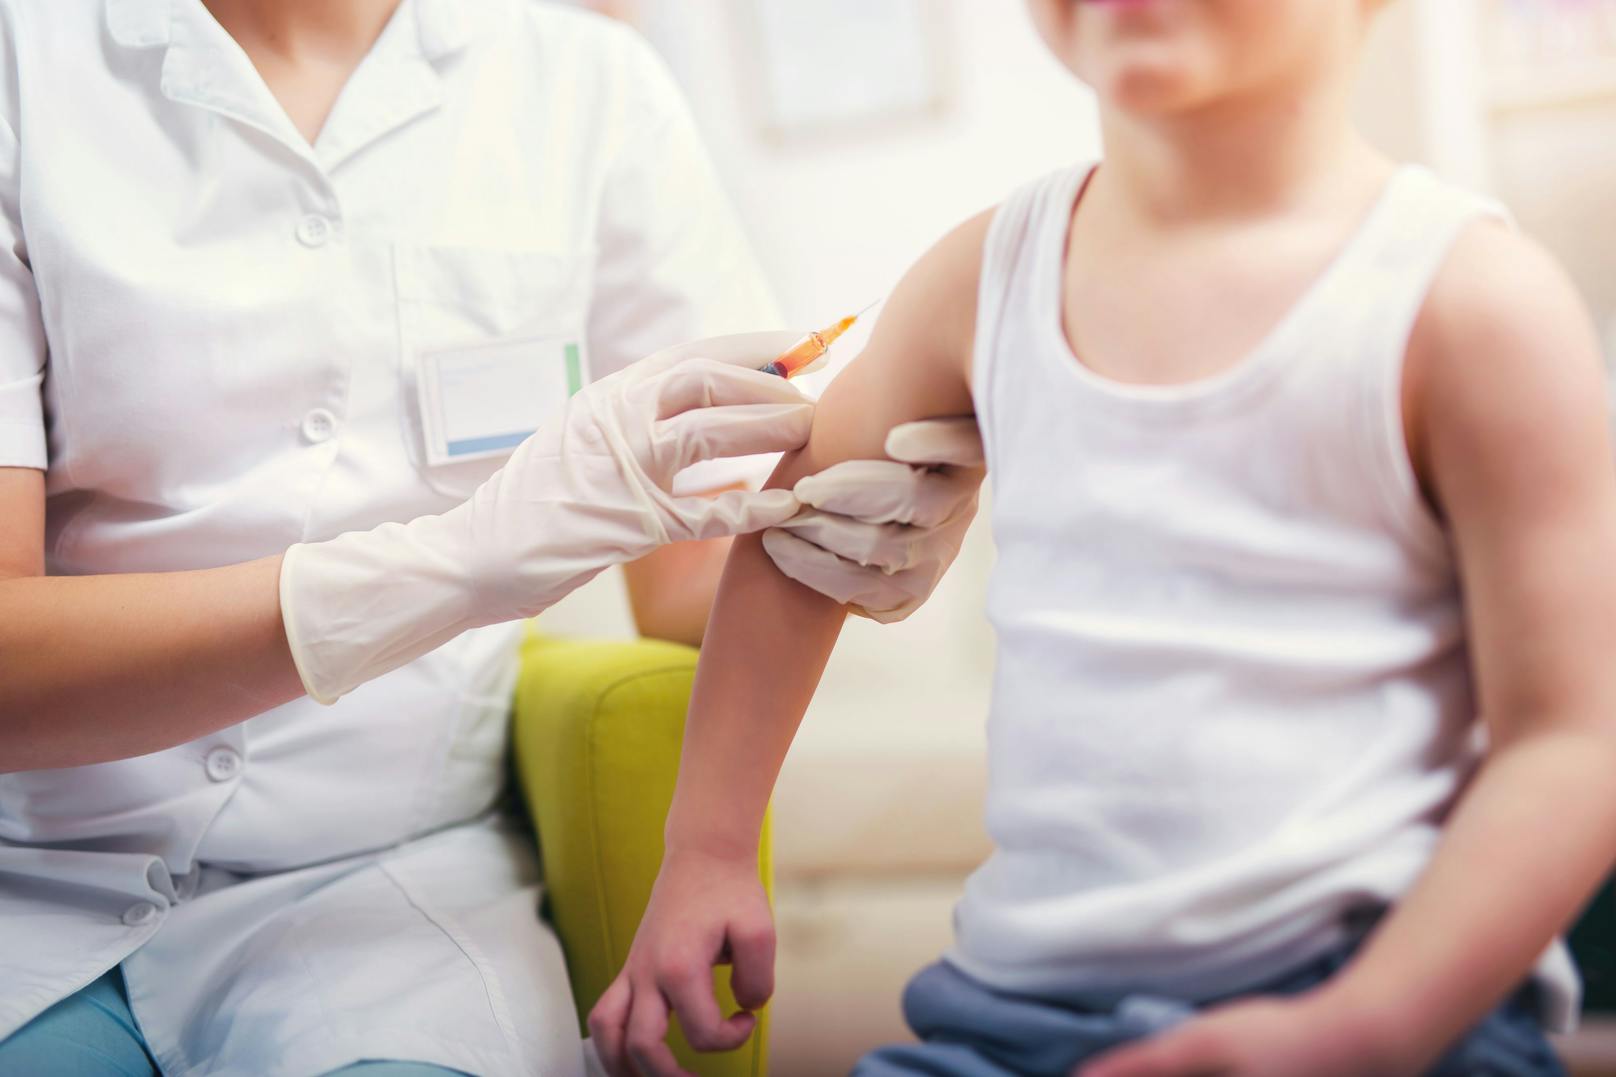 Kinder ab fünf Jahren können jetzt offiziell gegen Corona geimpft werden.